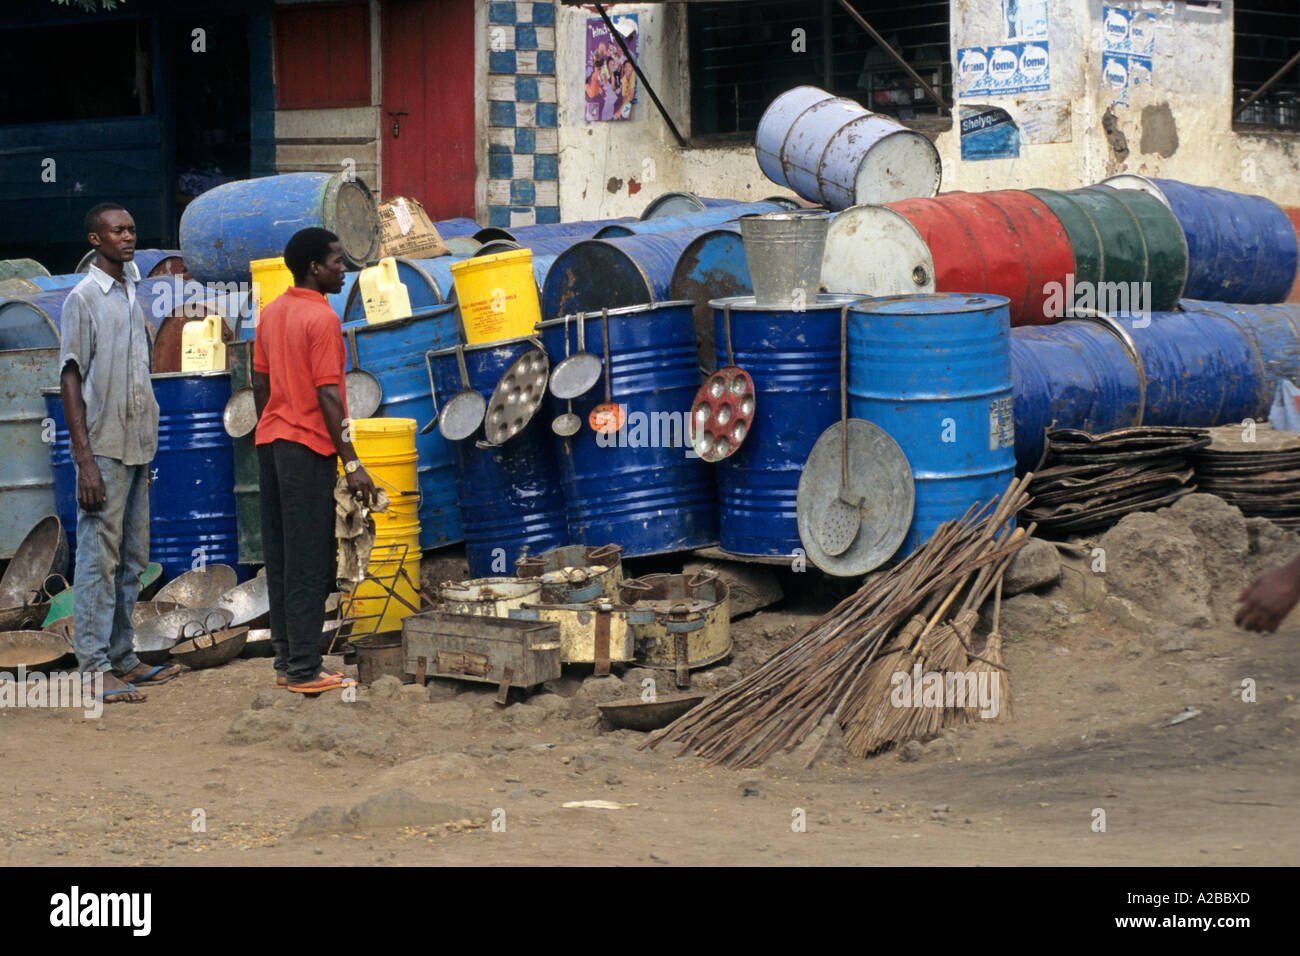 Utilisé des fûts d'huile sont recyclés dans des fourneaux de cuisine et ustensiles de cuisine ; Moshi, Tanzanie Banque D'Images